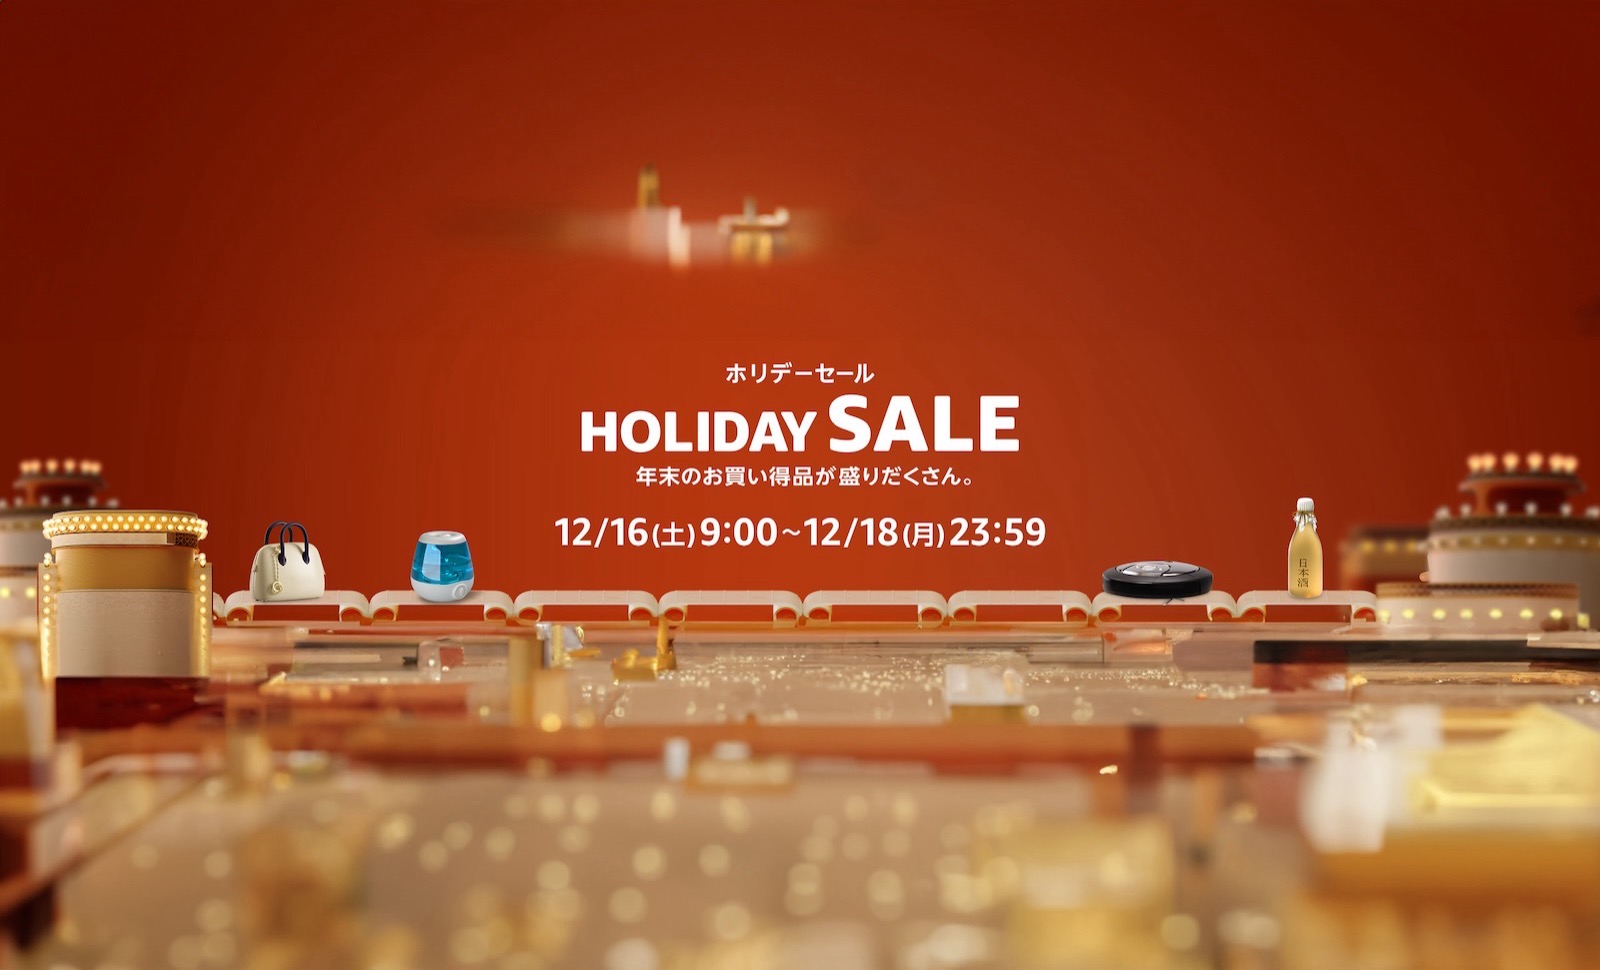 Holiday-sale-amazon-photoshopped.jpg